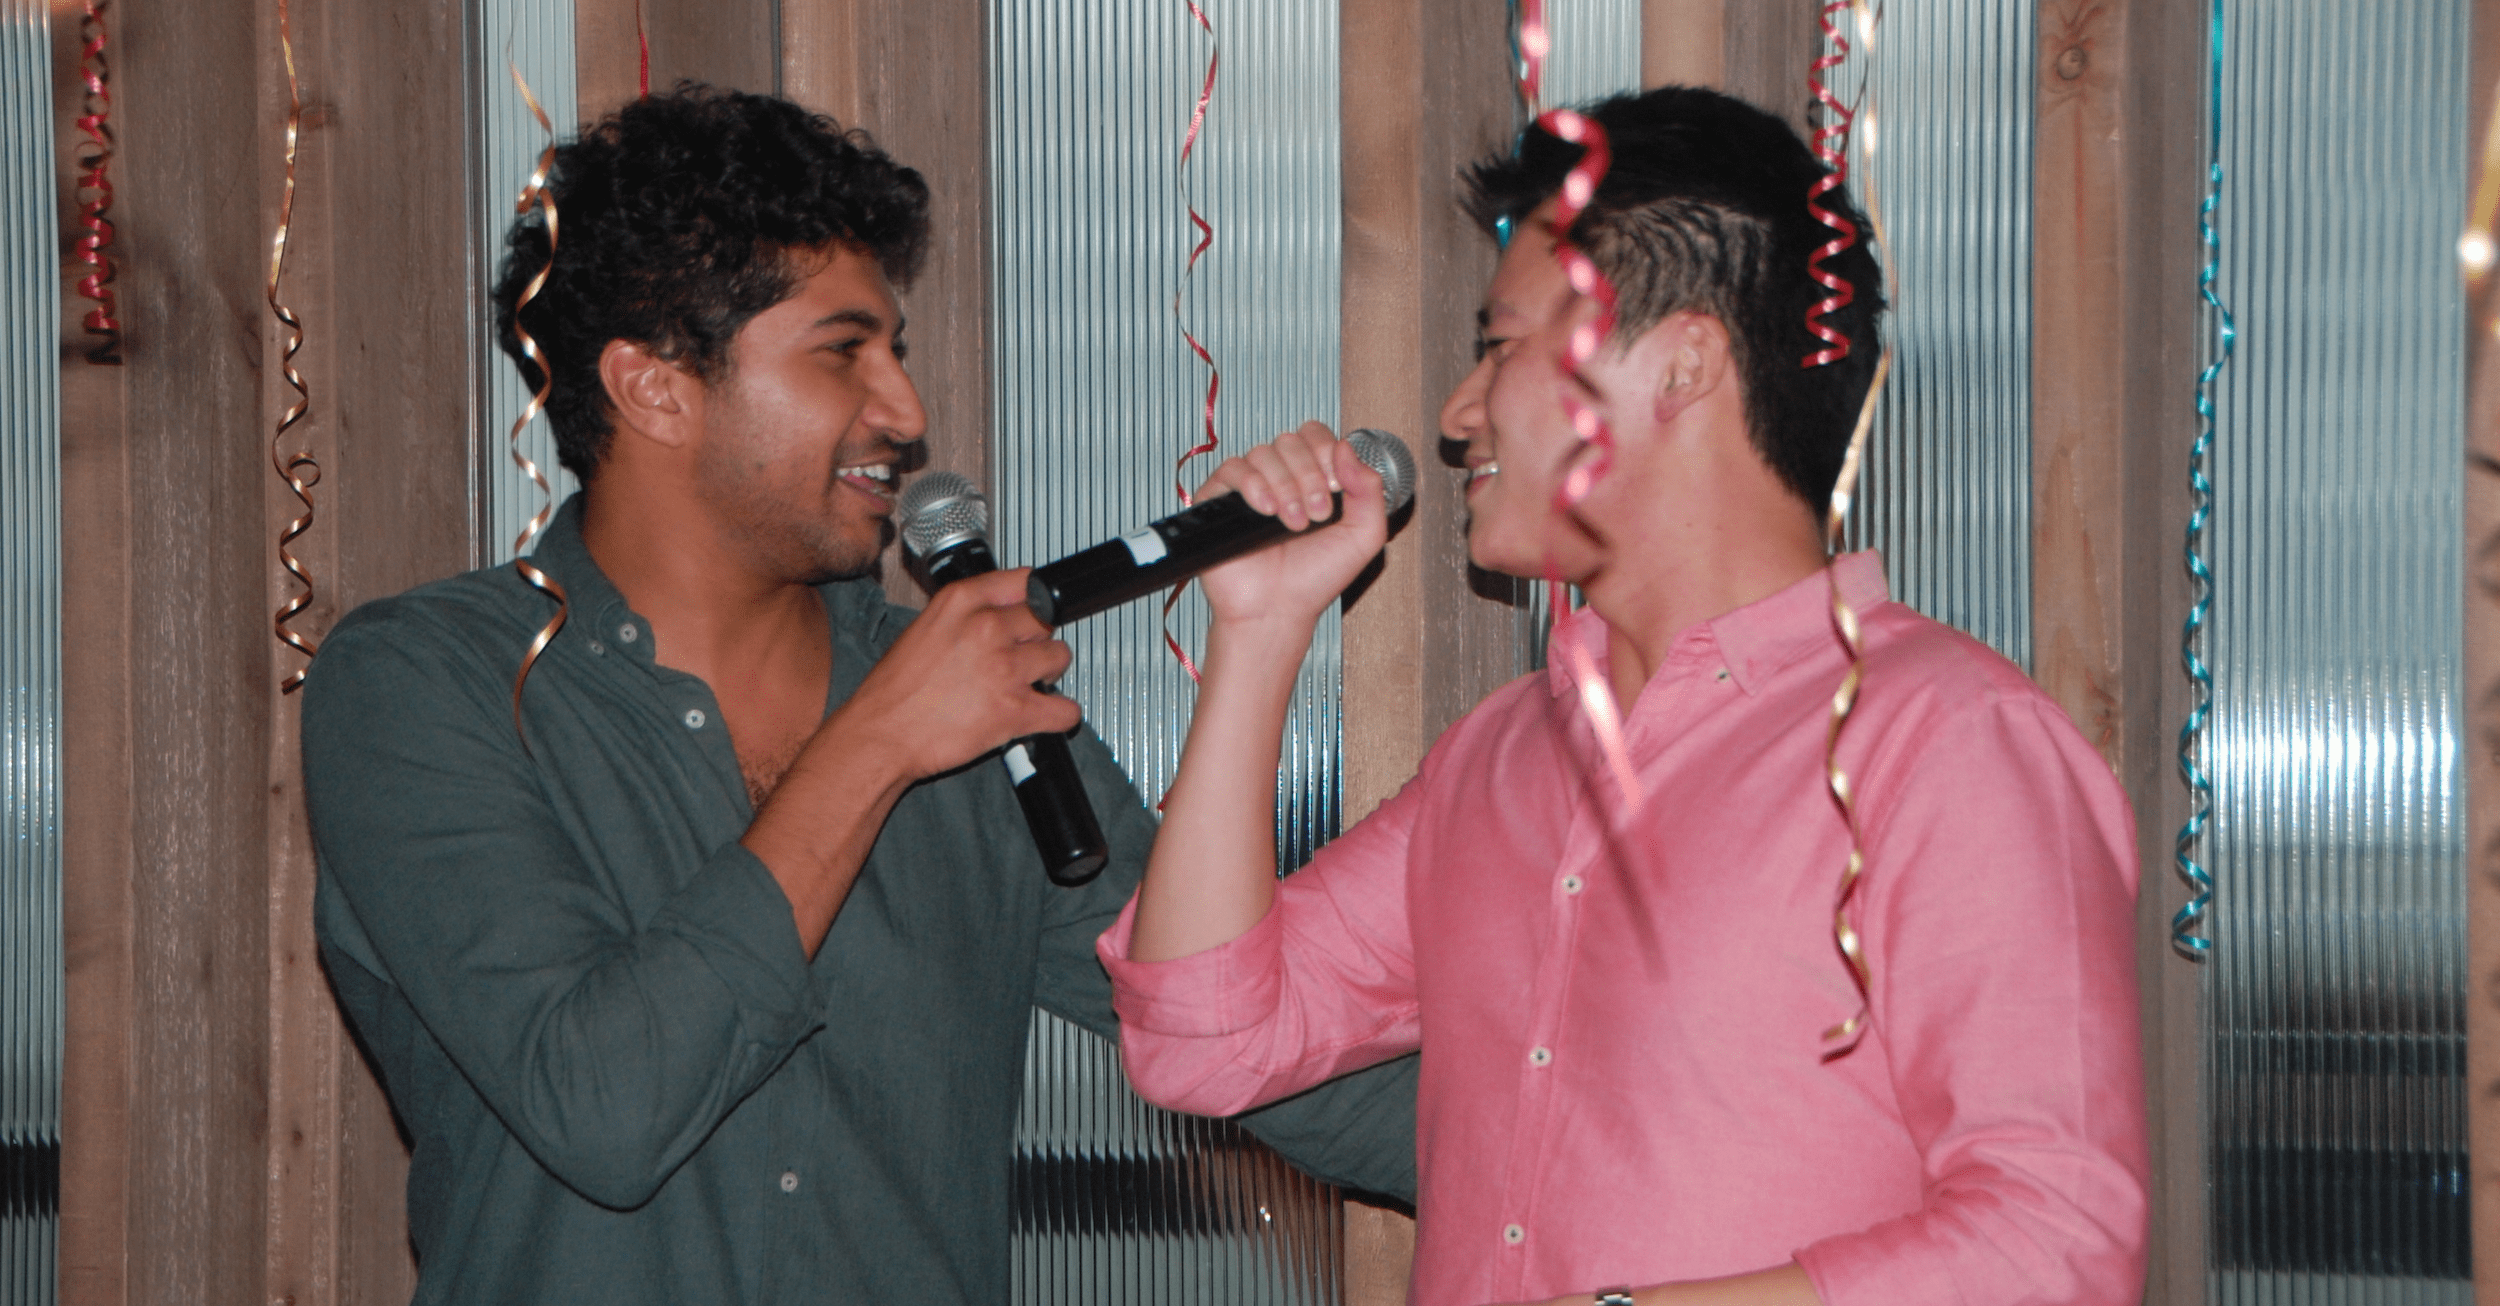 2 men singing karaoke